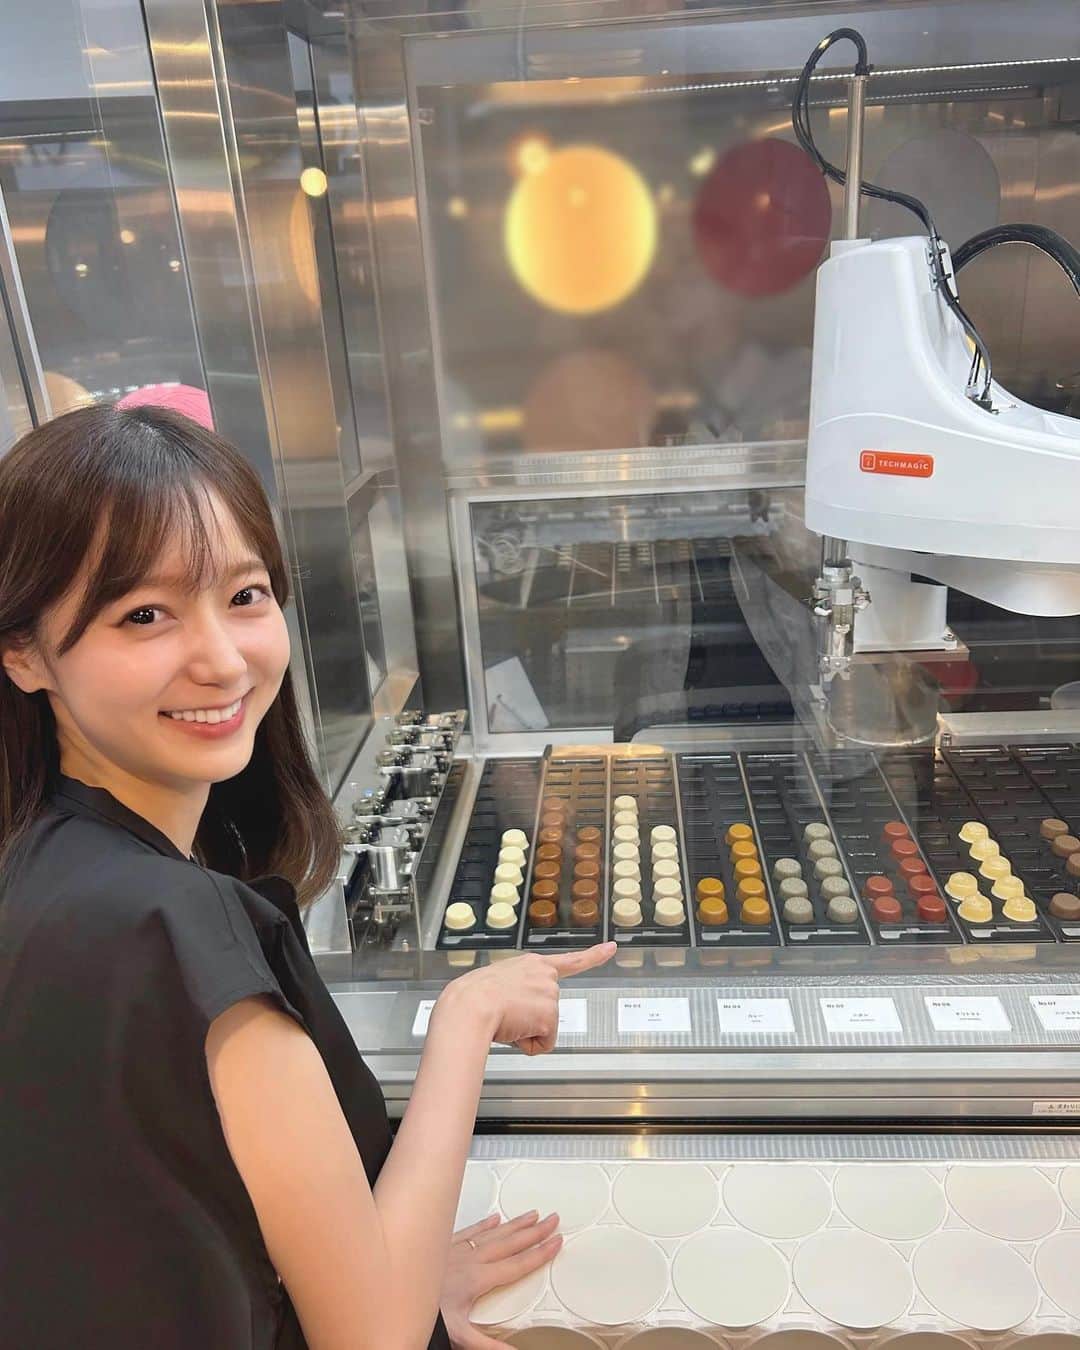 吉田悠希のインスタグラム：「♡ 昨日の中継コーナーでお邪魔した 渋谷にあるカスタムヌードル専門店 #オーマイドット さん🥡🥢 ⁡ 丸い”スープドット”をオーダー通りに この機械が選んでくれて、あっという間に 美味しいオリジナルヌードルが完成します🫶 ⁡ ⁡ スープは10種類、麺は3種類から選べて トッピングと合わせると組み合わせは 最大525通りもあるそうです…！ ⁡ ⁡ 皆さんもお好みのオリジナルヌードルを 作りに行ってみてください☺️ 場所は、渋谷のスペイン坂です🧡💛 ⁡ ⁡ ┈┈┈┈┈┈┈┈┈┈┈┈┈┈┈┈┈┈┈ ⁡ ◽️ニッポン放送「辛坊治郎ズーム」 (月)〜(木)15:30~17:30 ⁡ (中継コーナーは16:50頃からです) ┈┈┈┈┈┈┈┈┈┈┈┈┈┈┈┈┈┈┈ #カスタムヌードル #ラーメン #渋谷グルメ #渋谷ランチ #スペイン坂 #オリジナルヌードル #スープヌードル #ニッポン放送 #おでかけスポット #辛坊治郎ズーム #セントフォース #吉田悠希」